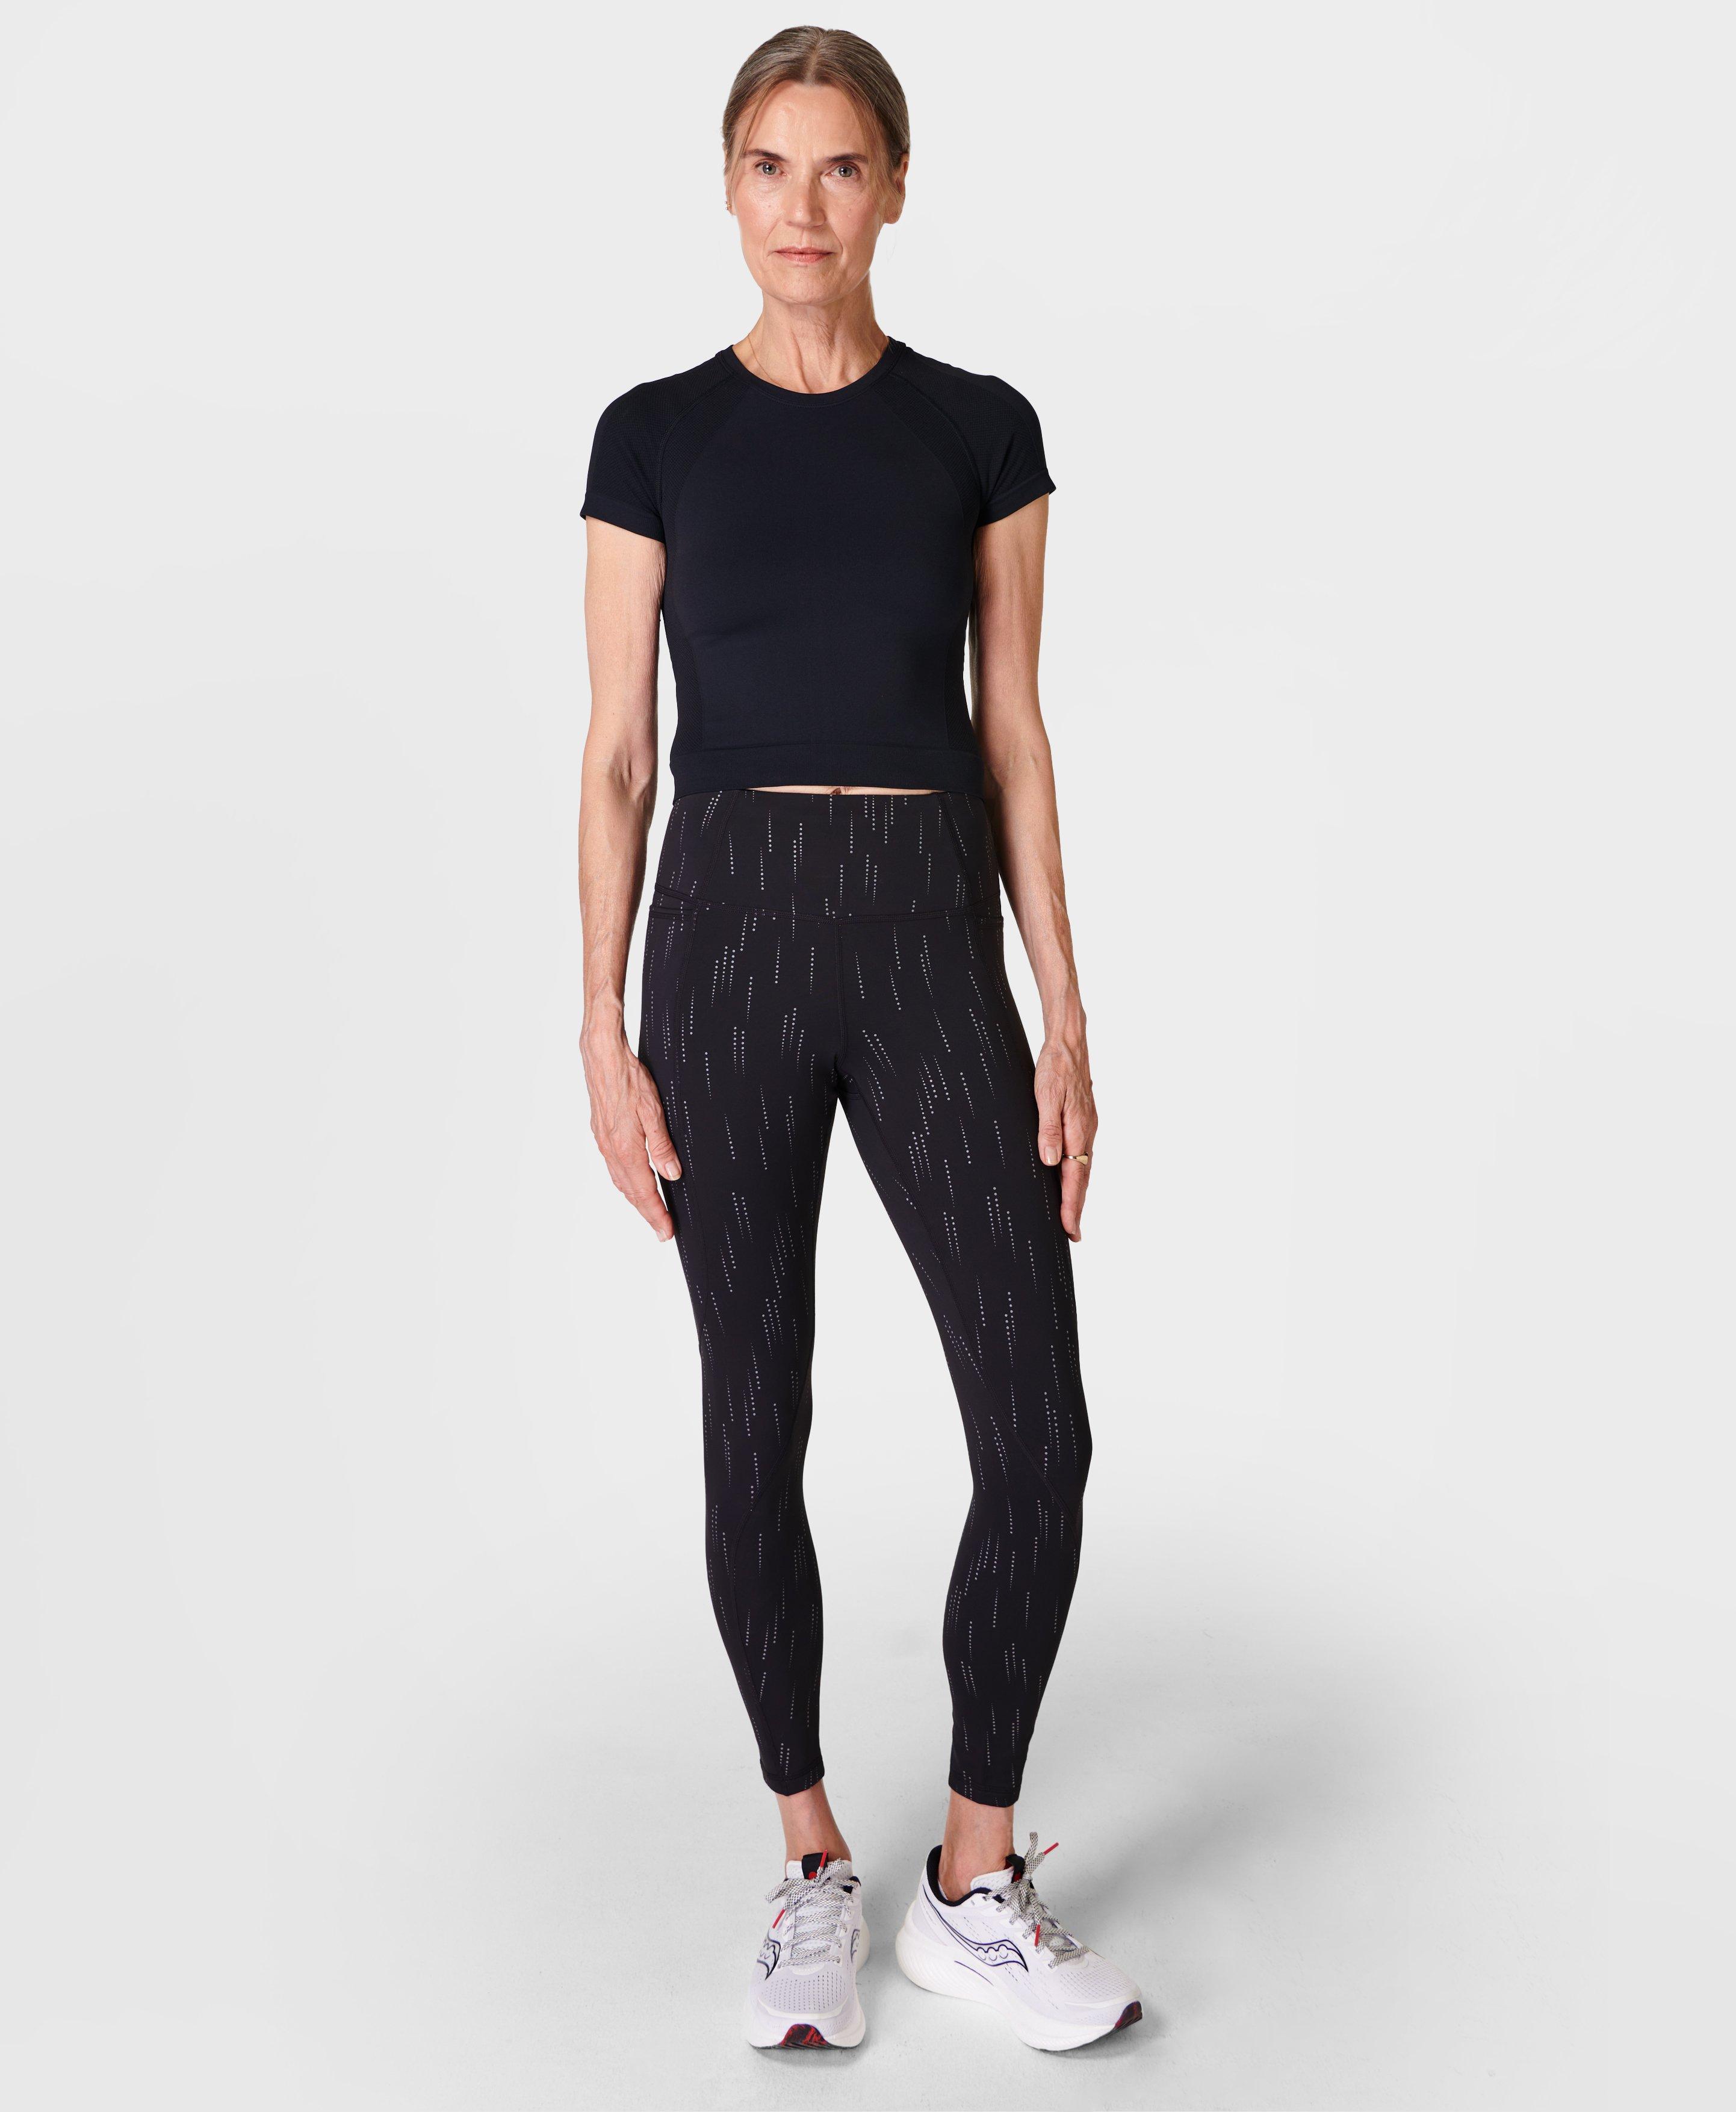 Ivegotisshoes2 - Louis Vuitton reflective leggings